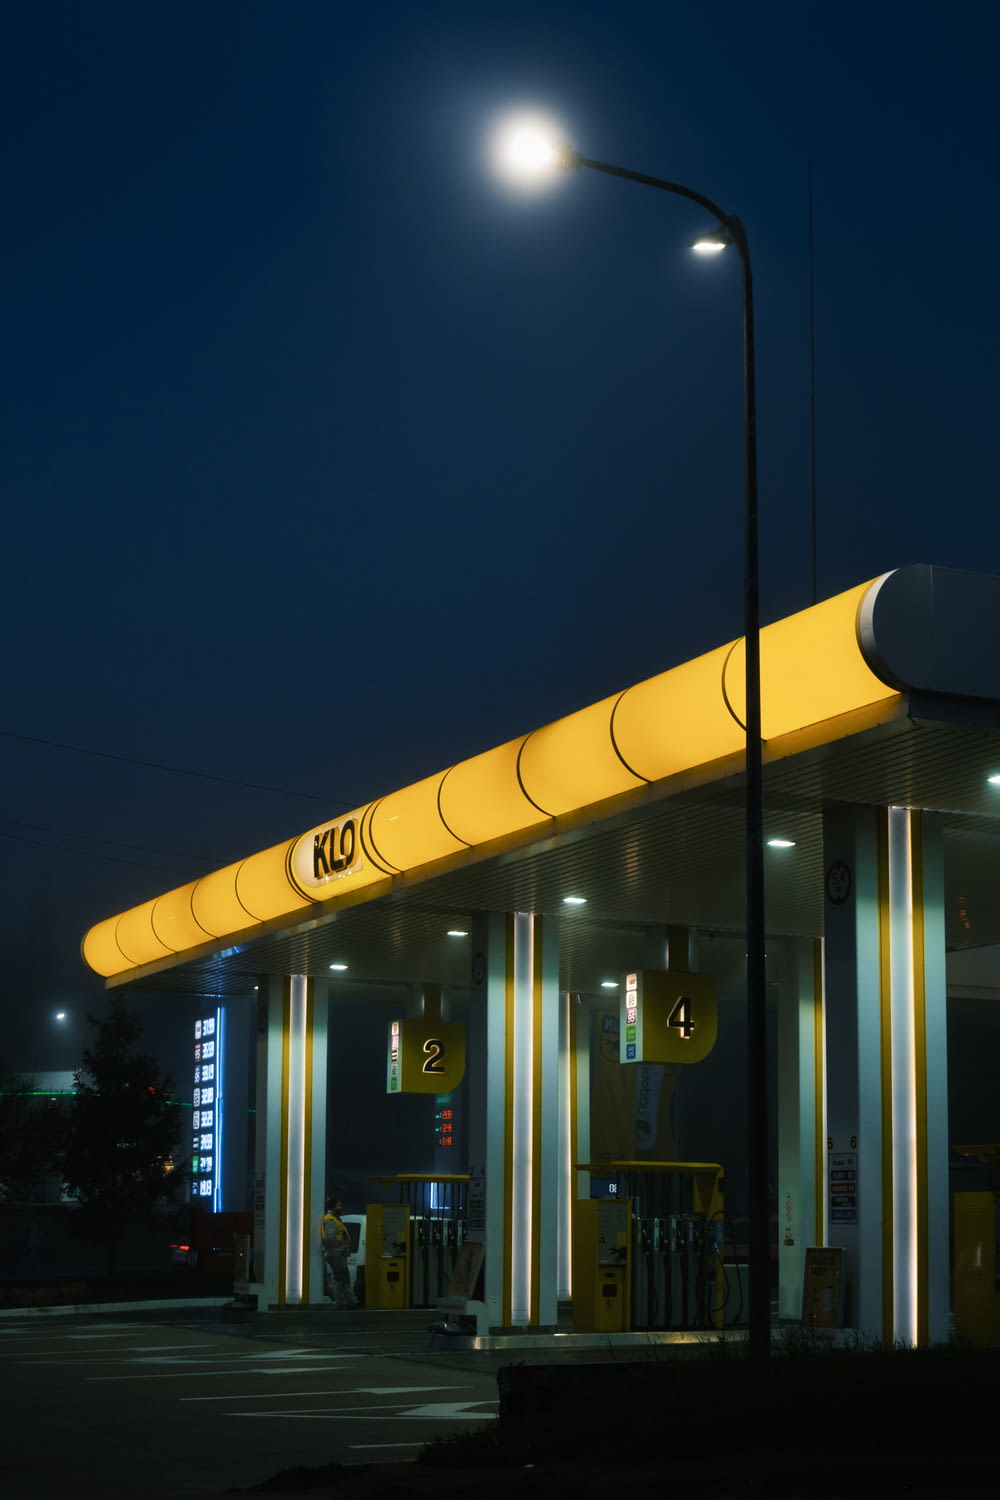 Una gasolinera por la noche con las luces encendidas